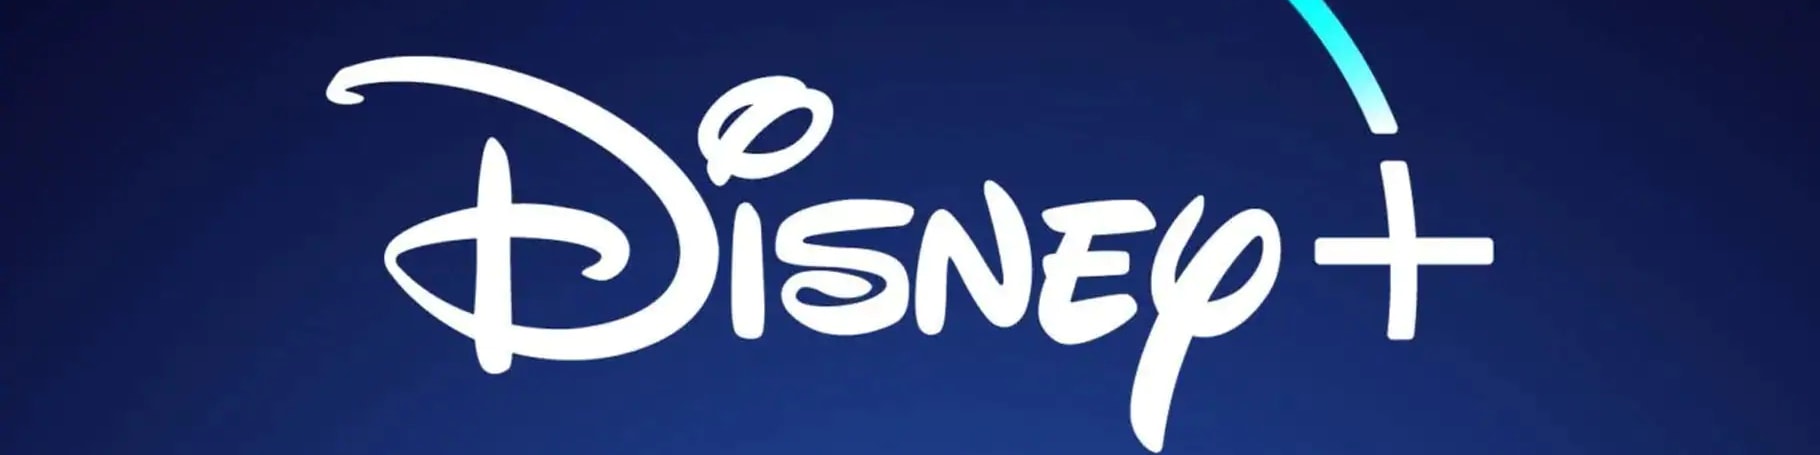 Disney_Logo.png